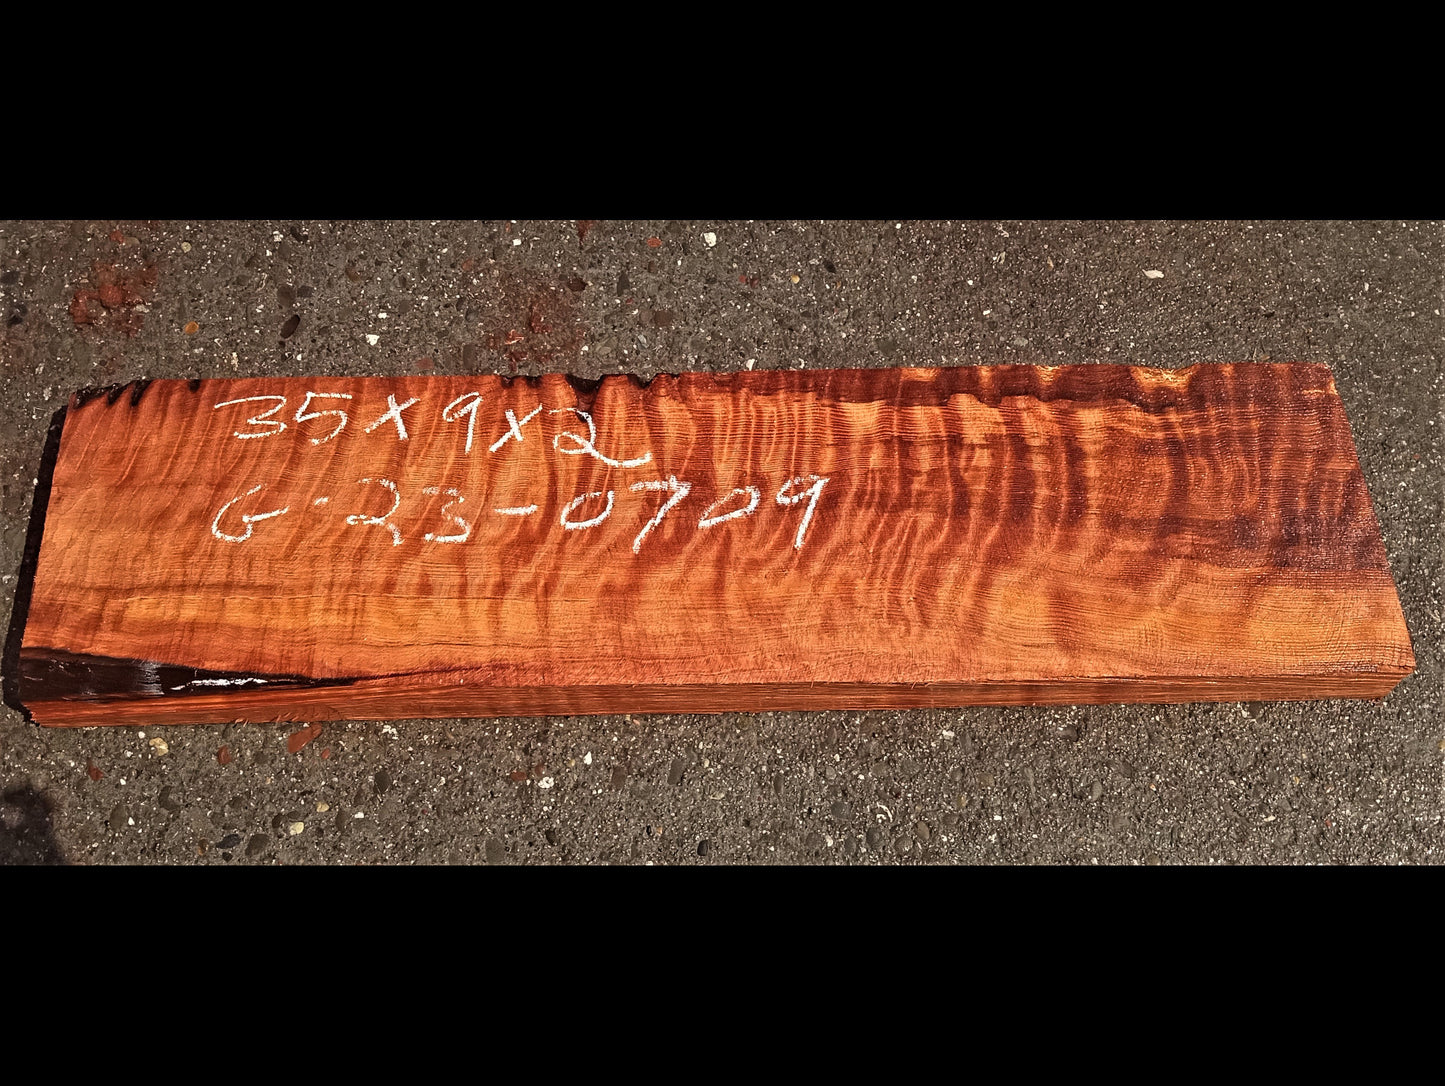 Quilted redwood | guitar billet | wood turning | DIY crafts | g23-0709